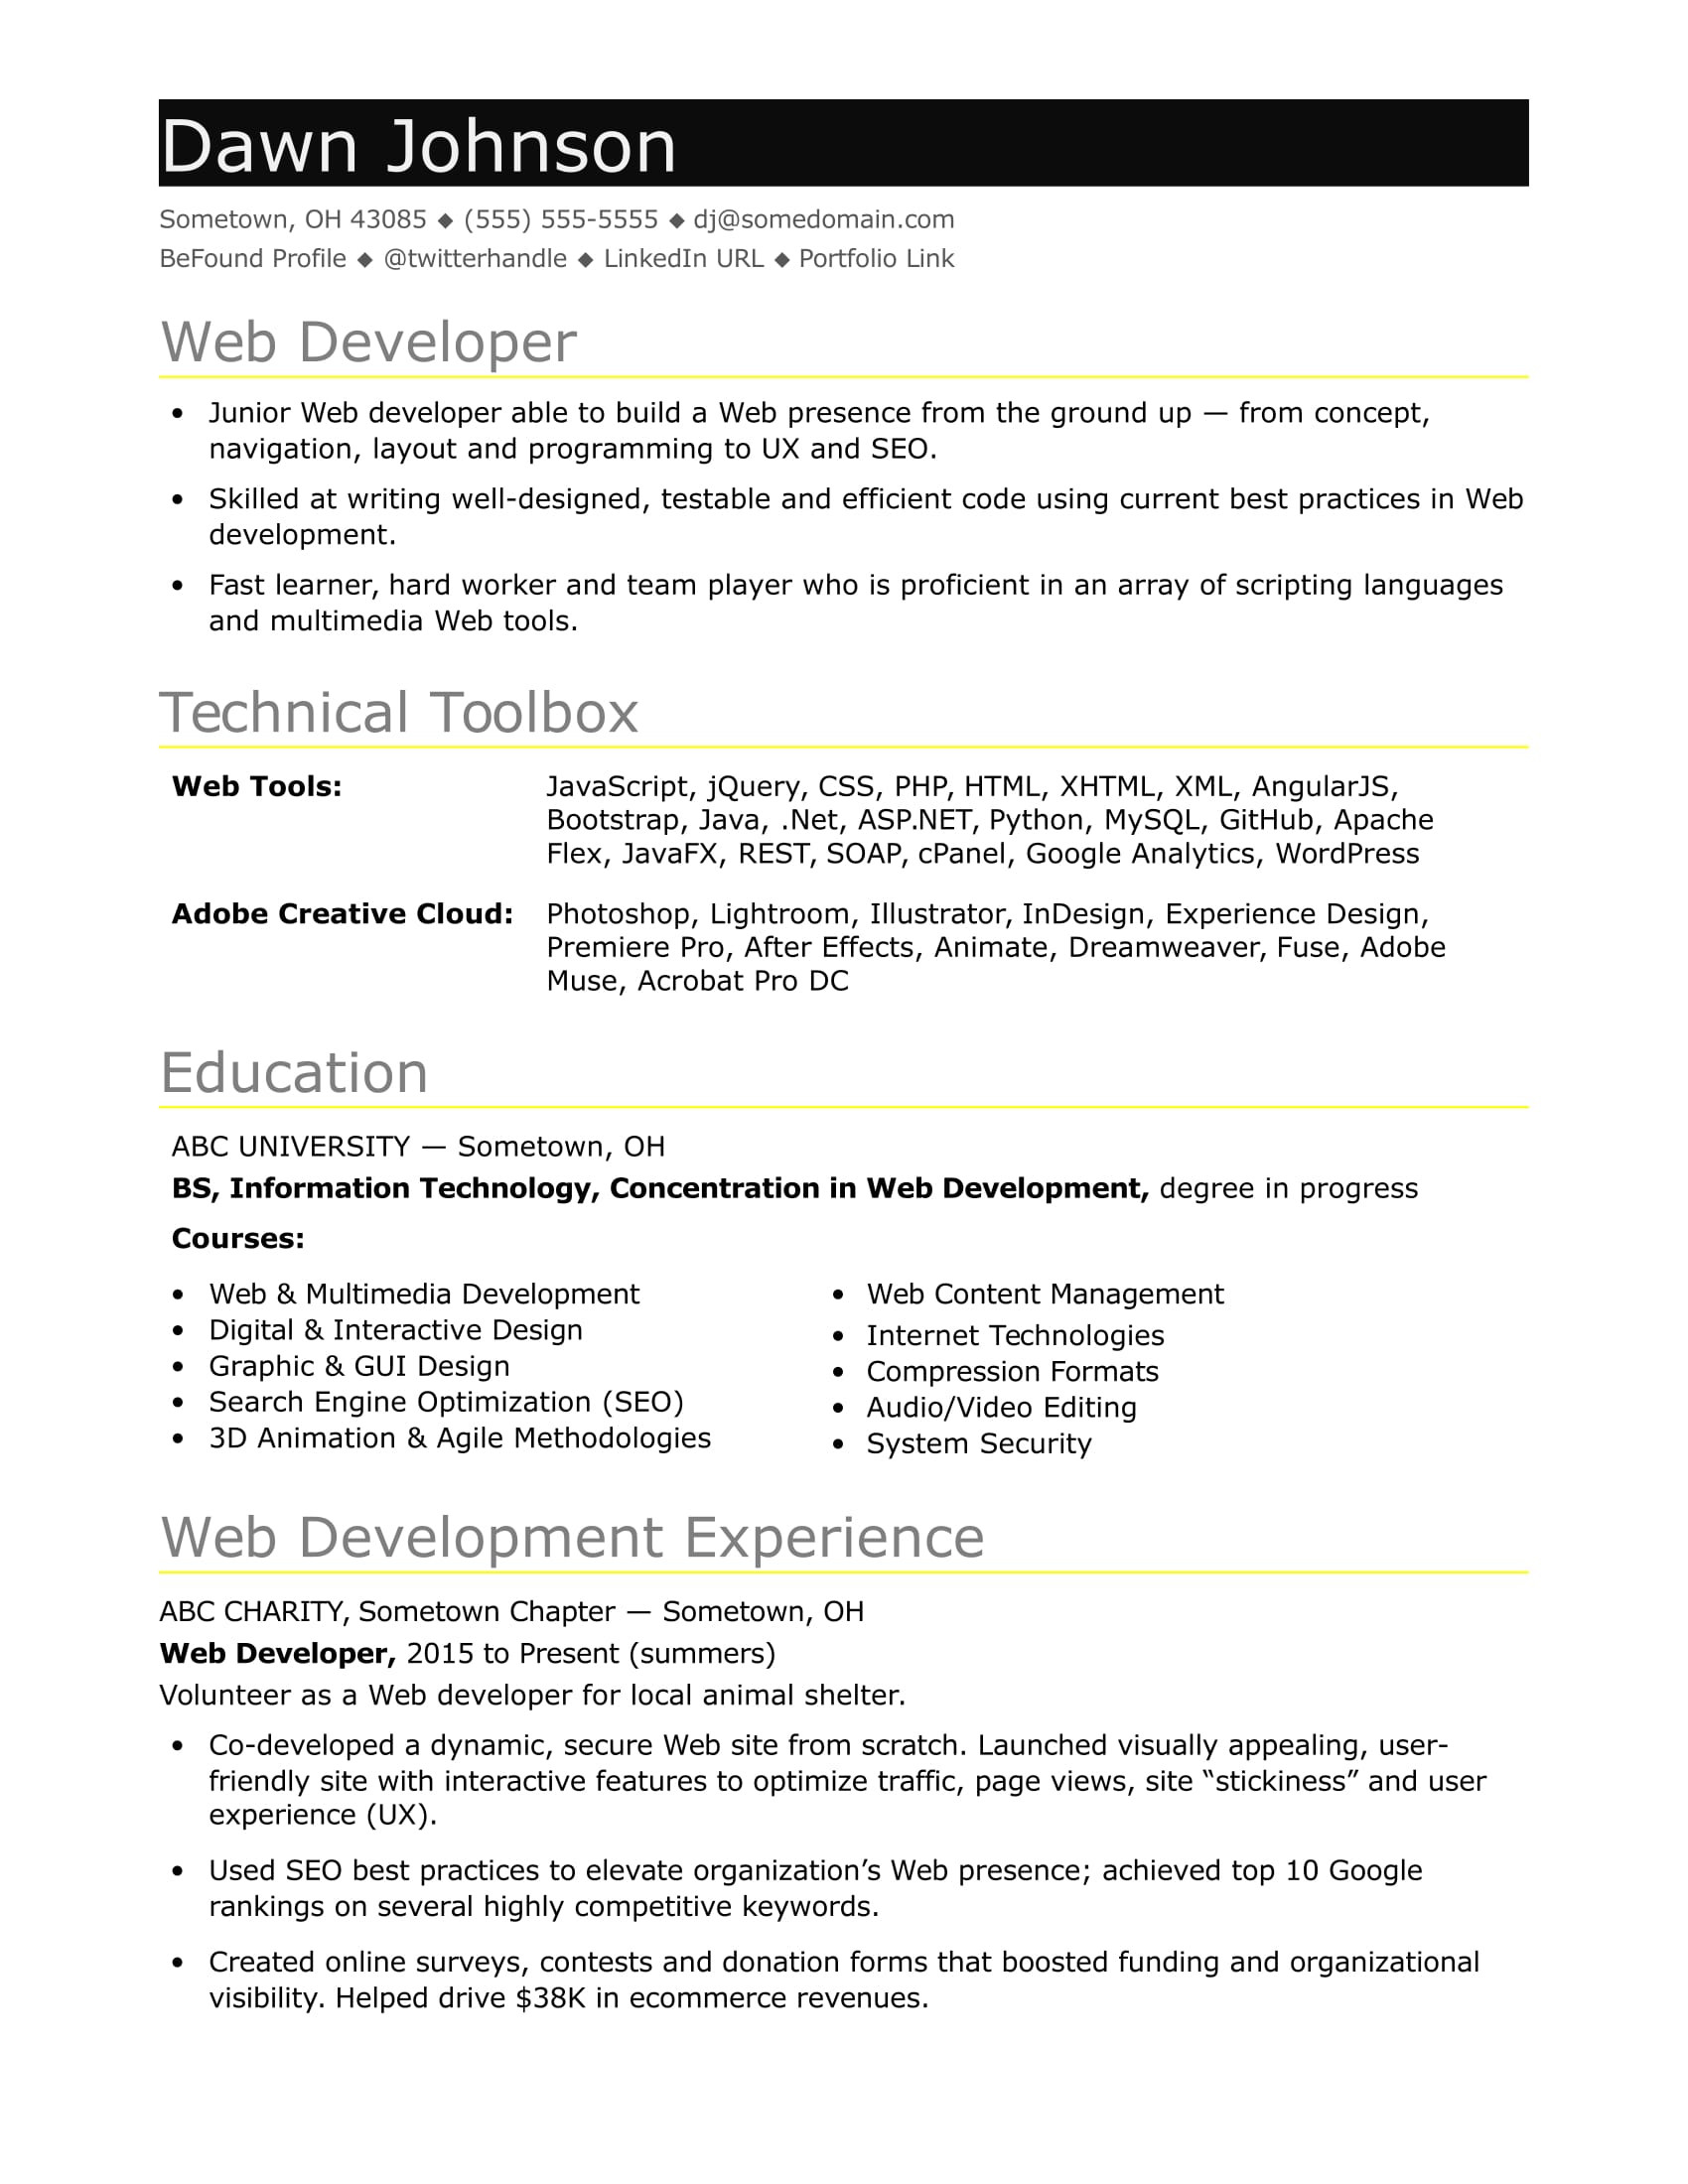 Angularjs Resume Net with Web Api Sample Sample Resume for An Entry-level It Developer Monster.com